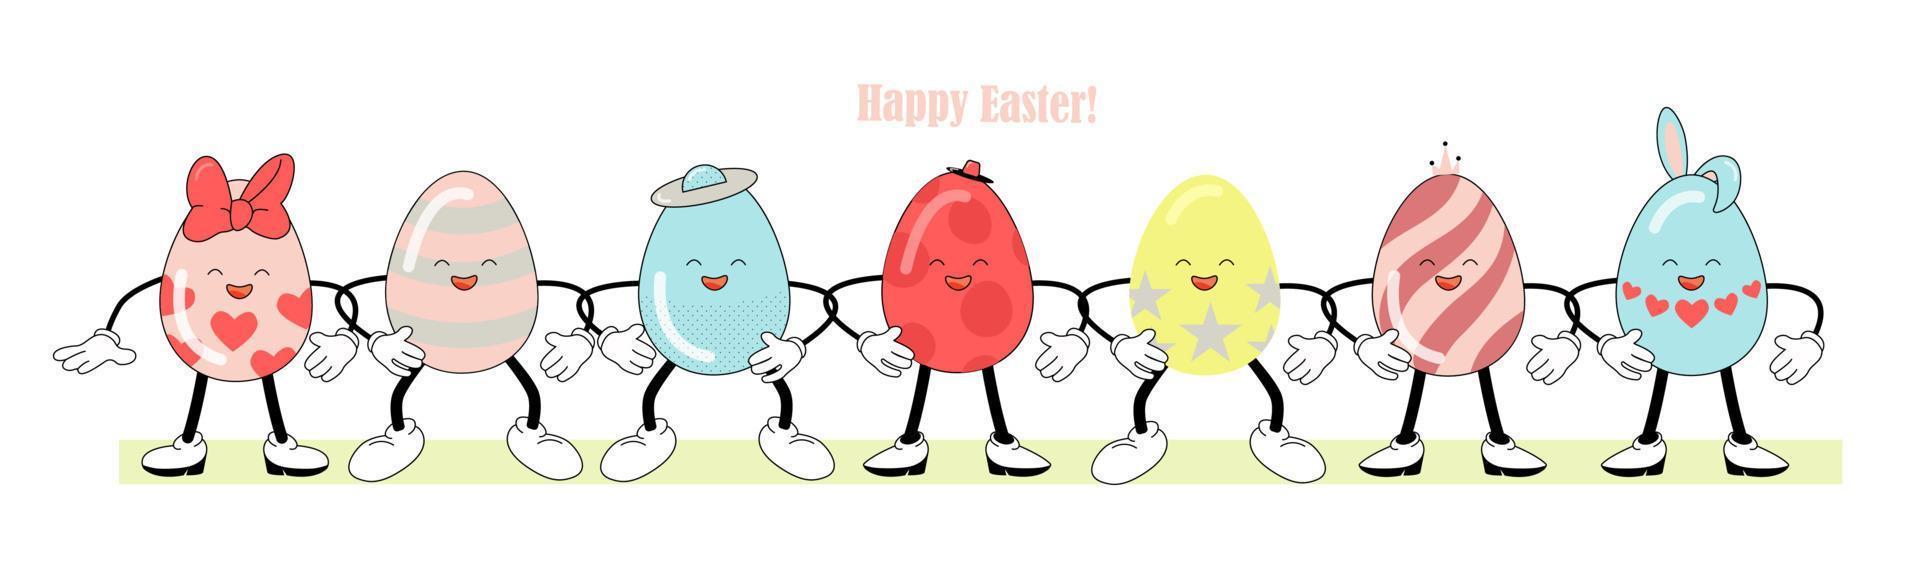 geschilderd Pasen eieren - grappig karakters, retro atmosfeer. gelukkig Pasen belettering. helder vector illustratie